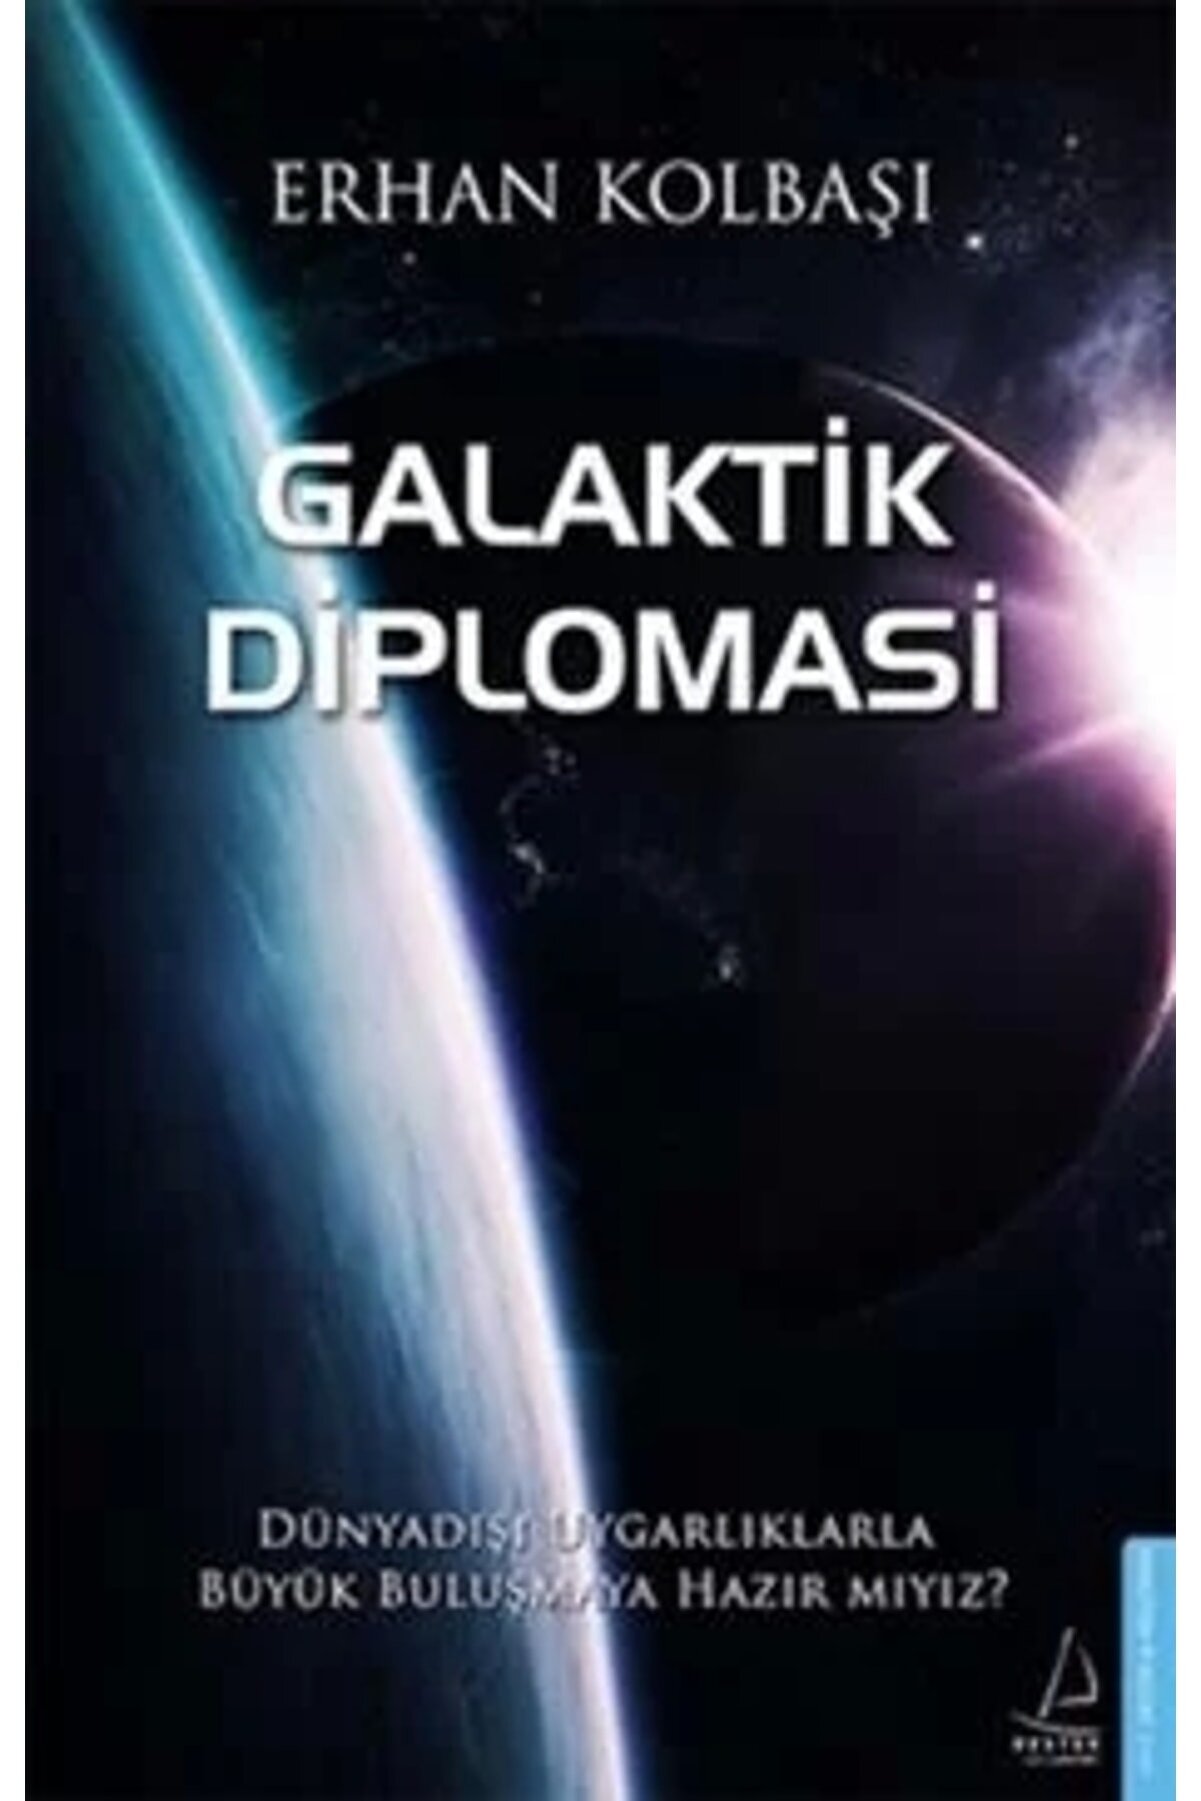 Destek Yayınları Galaktik Diplomasi Erhan Kolbaşı - Erhan Kolbaşı